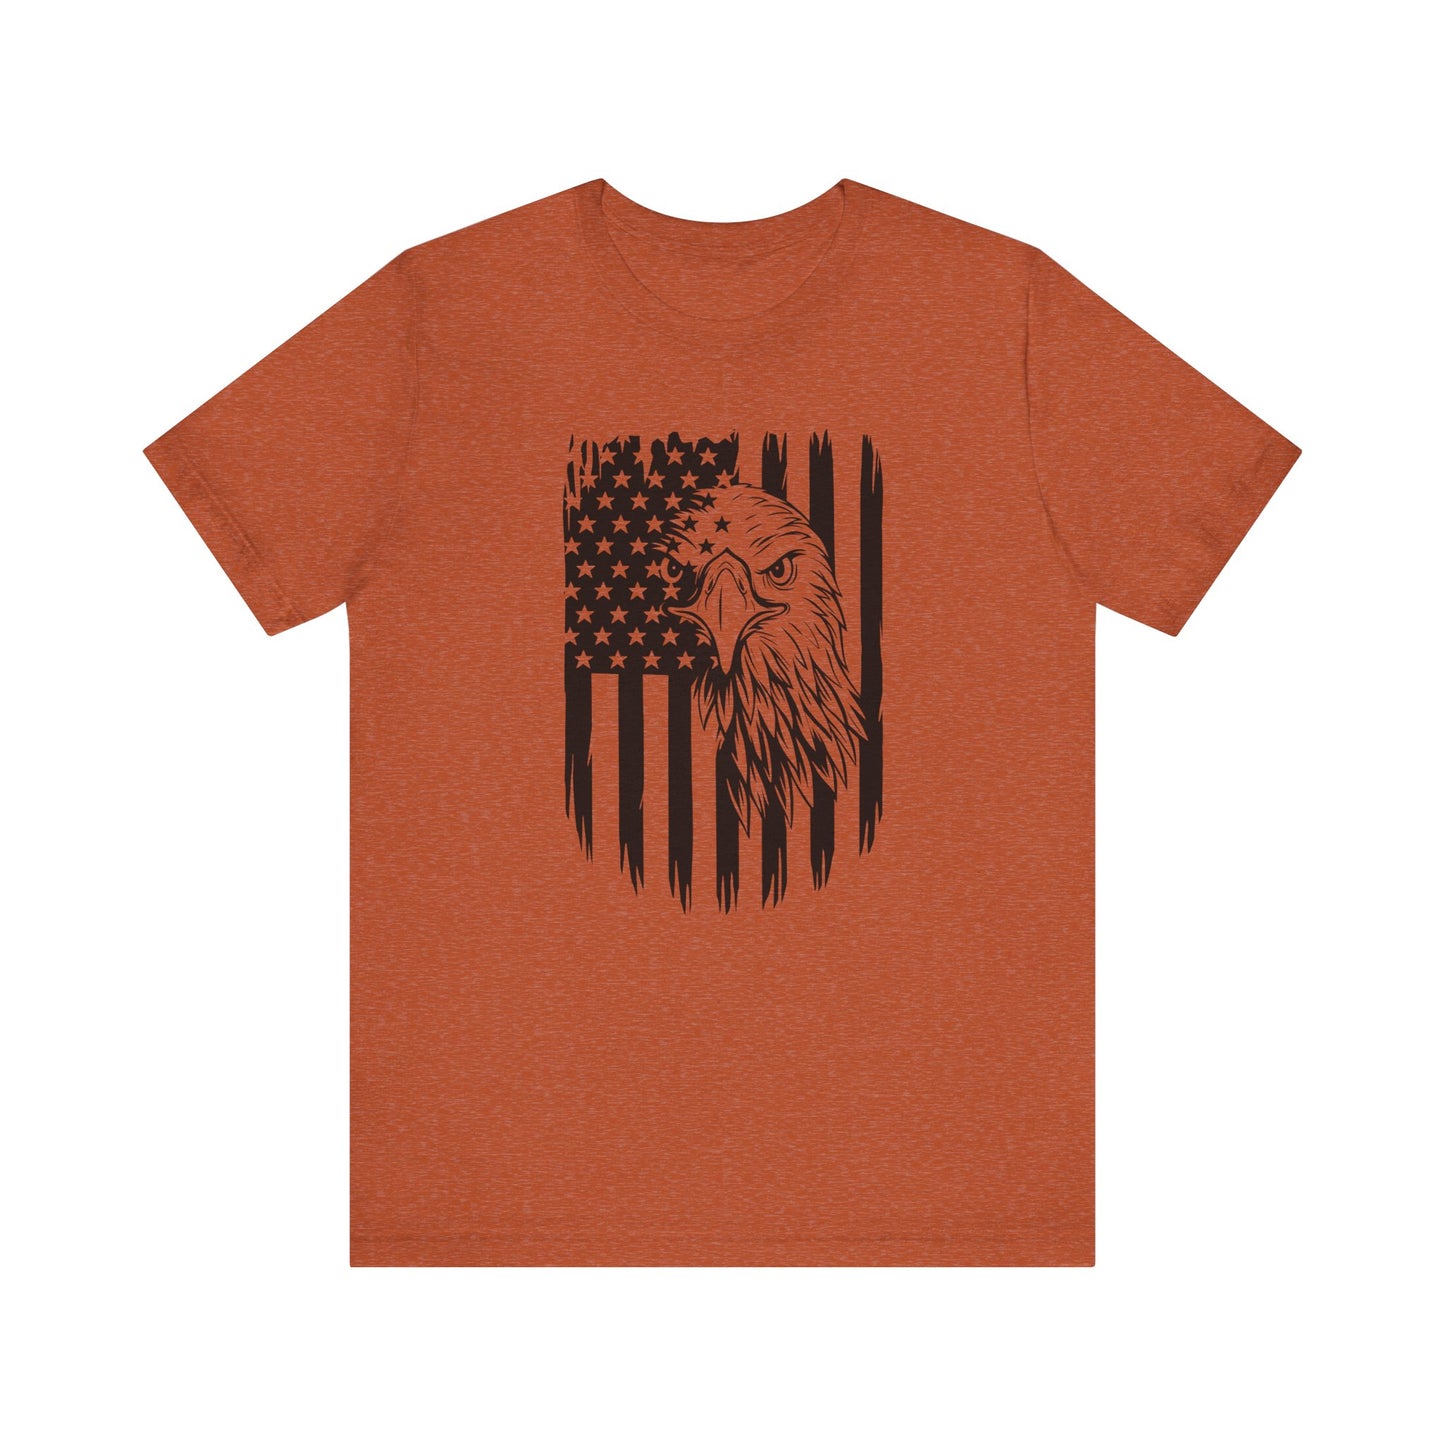 Flag T-Shirt For America T Shirt For Eagle TShirt For USA Pride Shirt